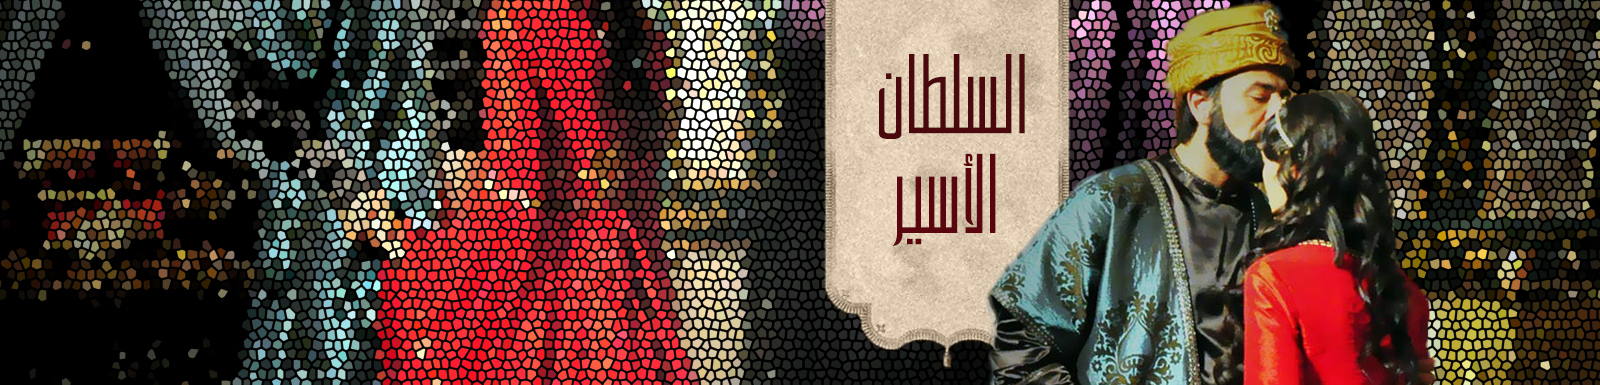 مشاهدة وتحميل مسلسل السلطان الأسير الحلقة 1 الأولى كاملة 2015 mbc